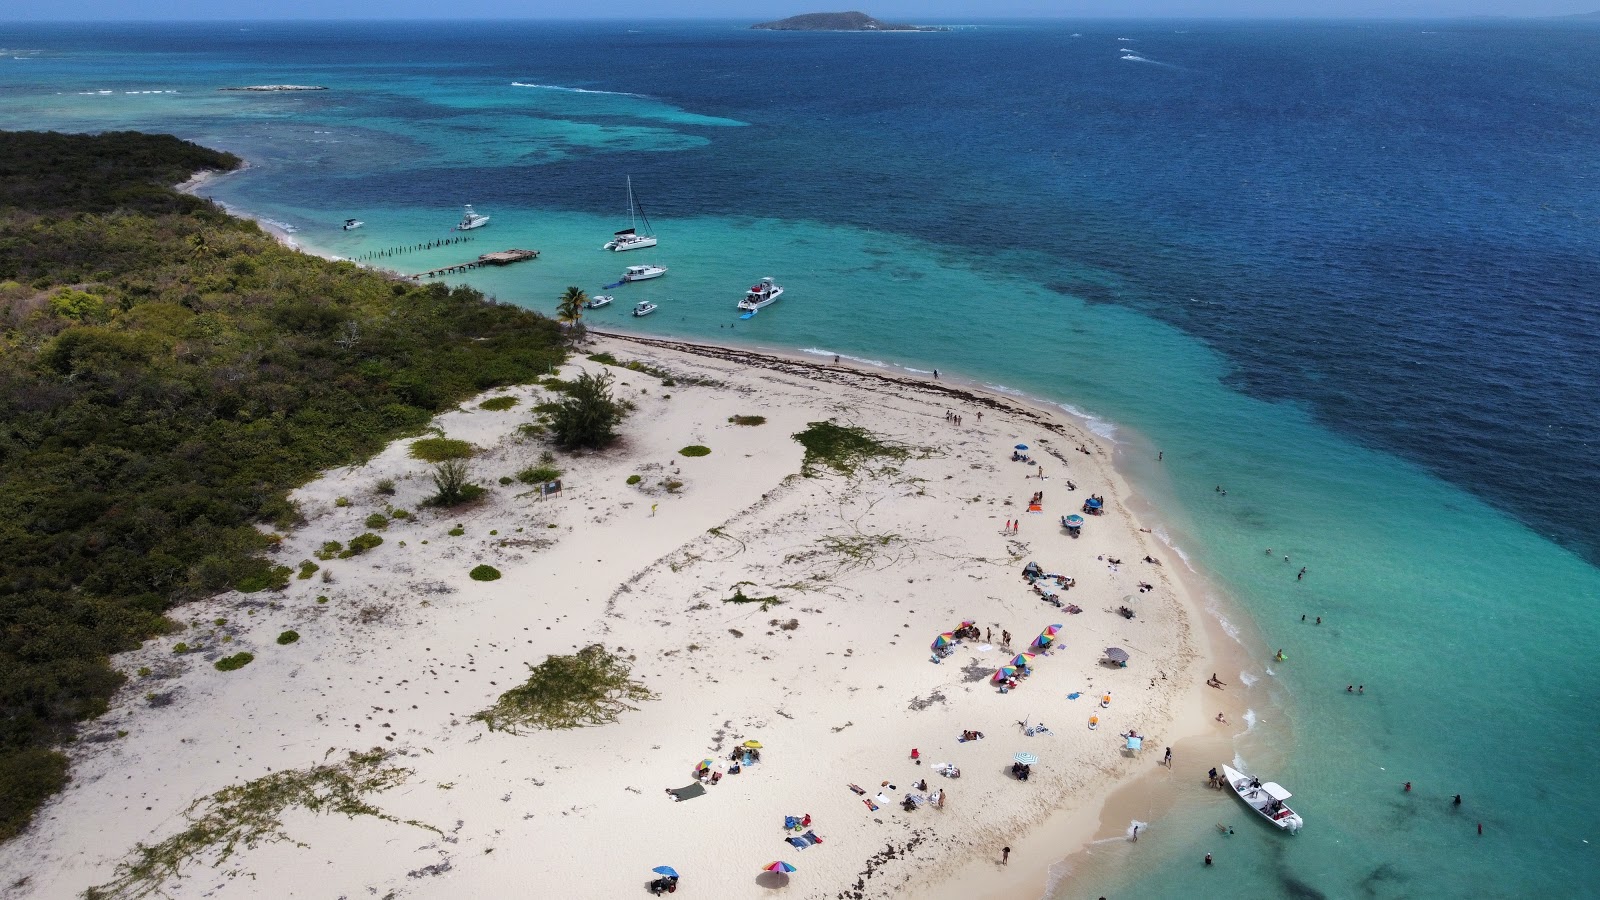 Zdjęcie Icacos beach - popularne miejsce wśród znawców relaksu